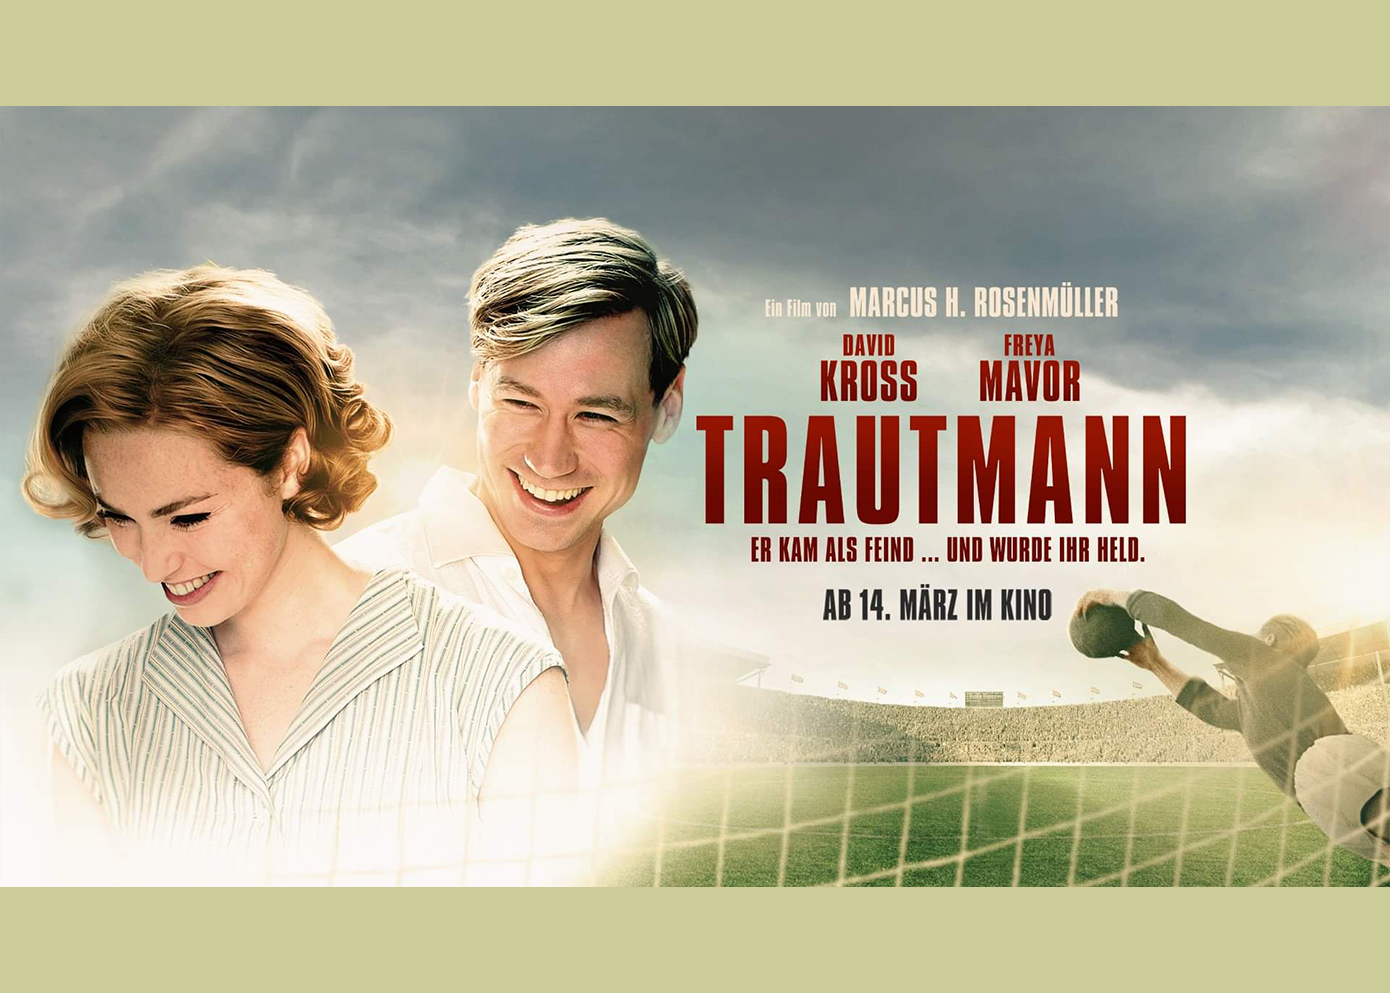 Filmabend zur Woche der Brüderlichkeit zeigt "Trautmann"